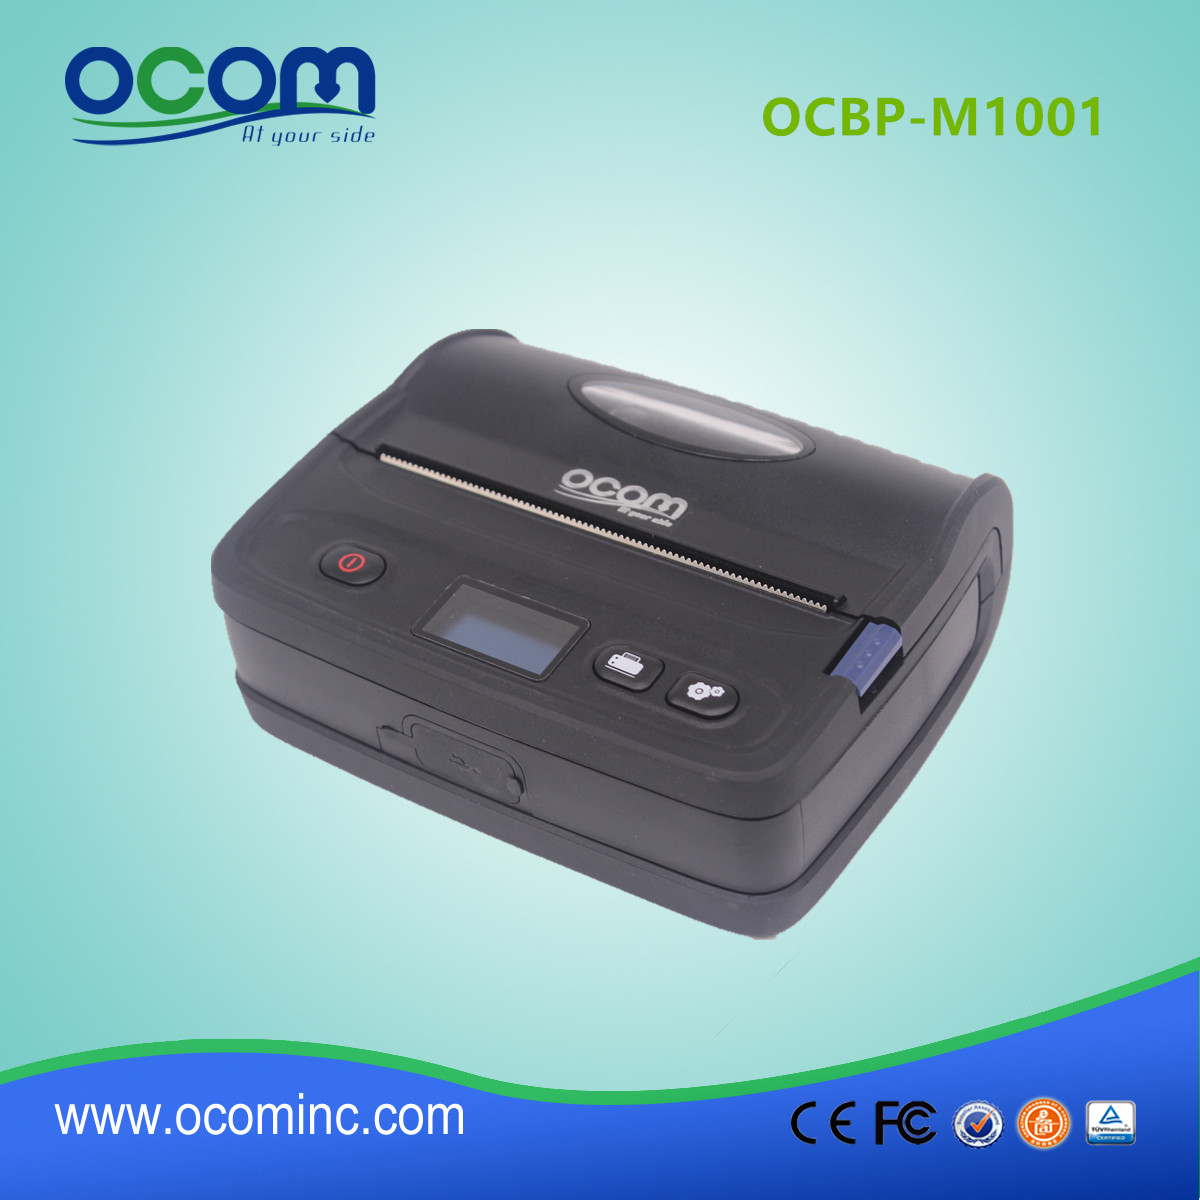 Окбп-м1001 высококачественный компакт-принтер с теплоотводом и этикеткой Bluetooth